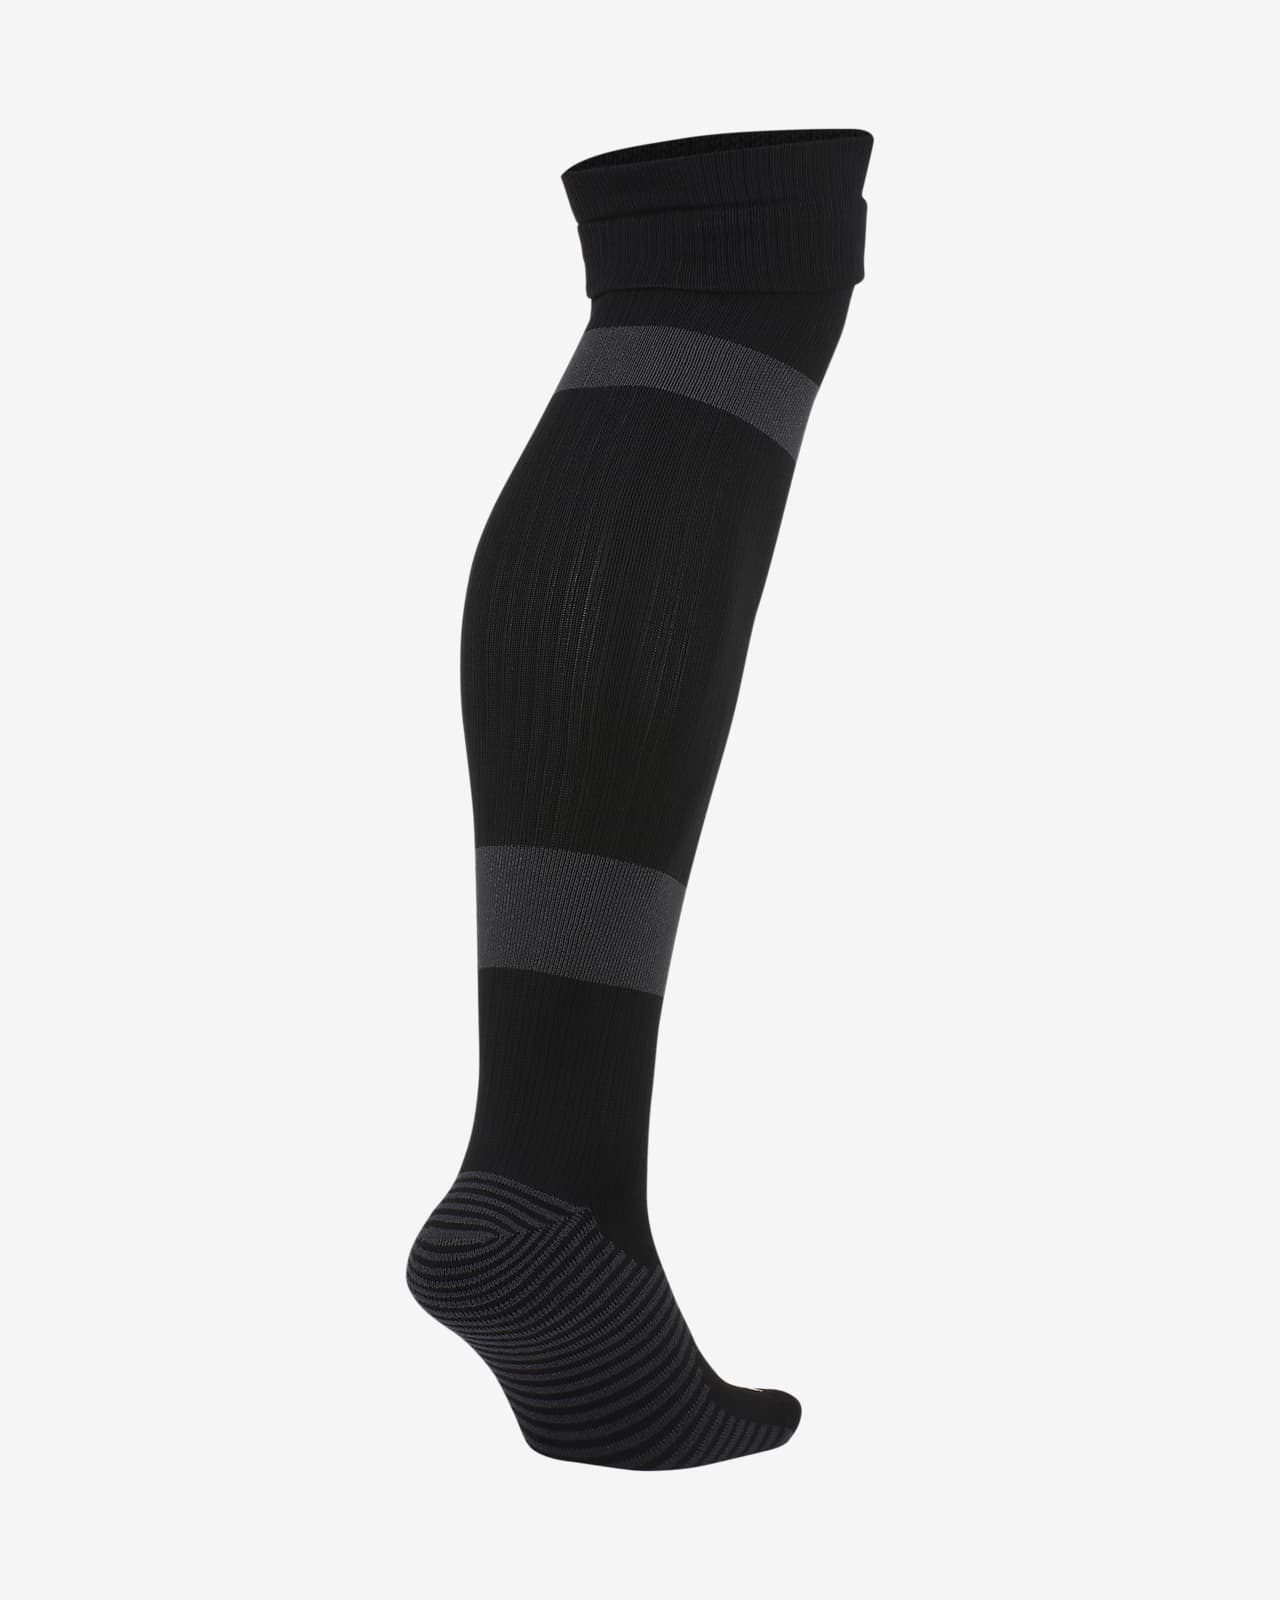 Nike MatchFit Soccer Knee-High Socks 